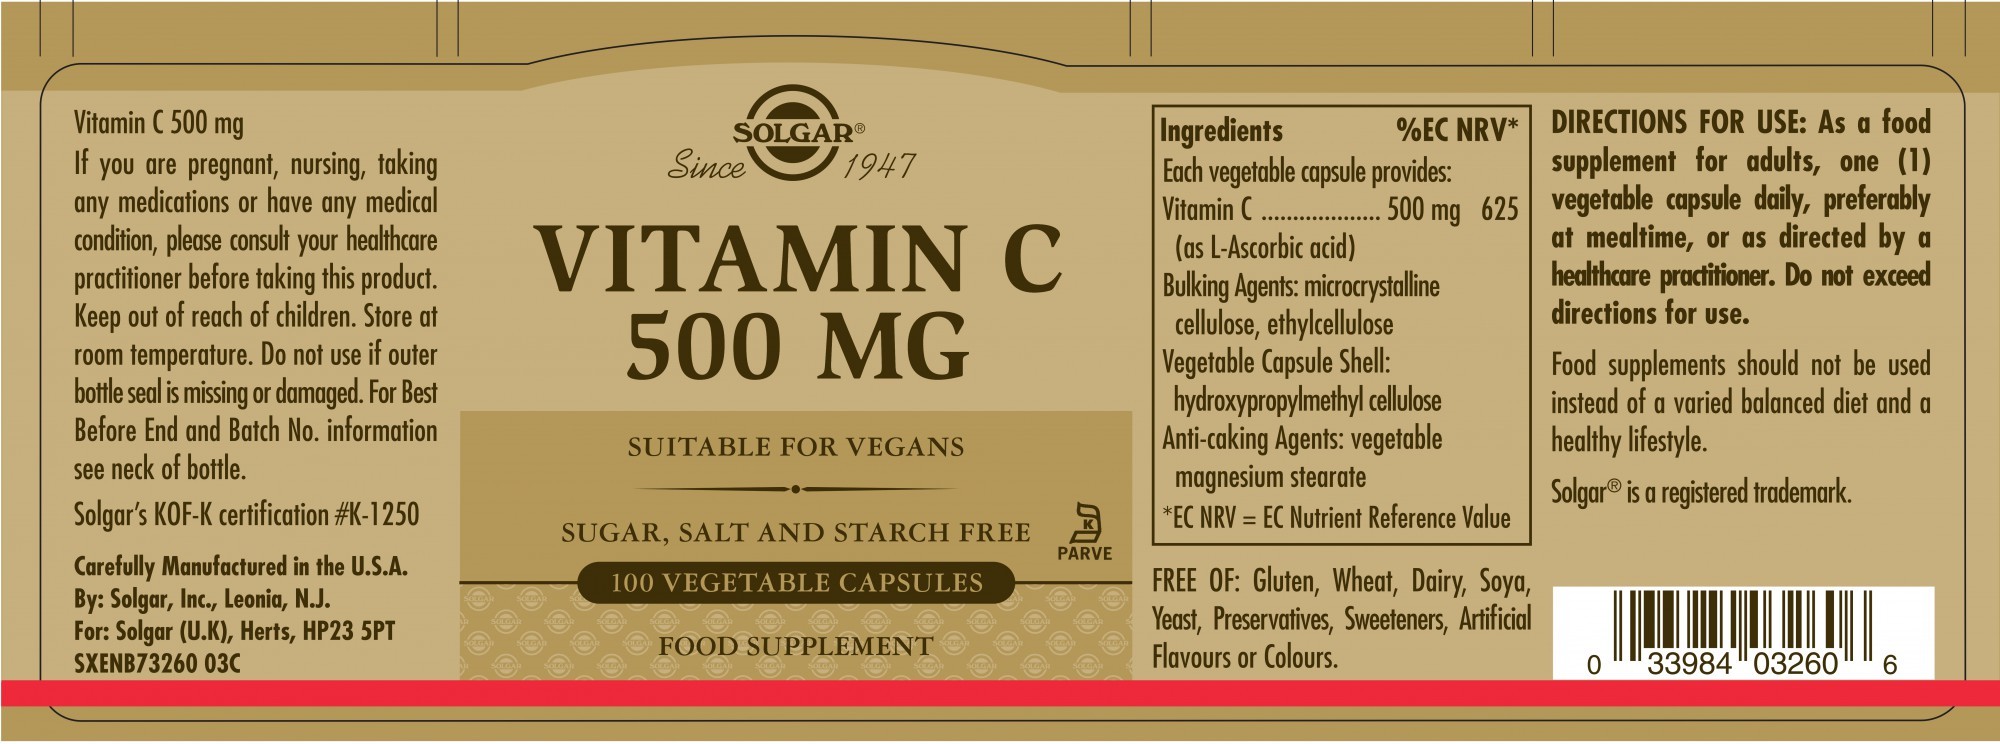 Solgar Vitamin C 500 MG